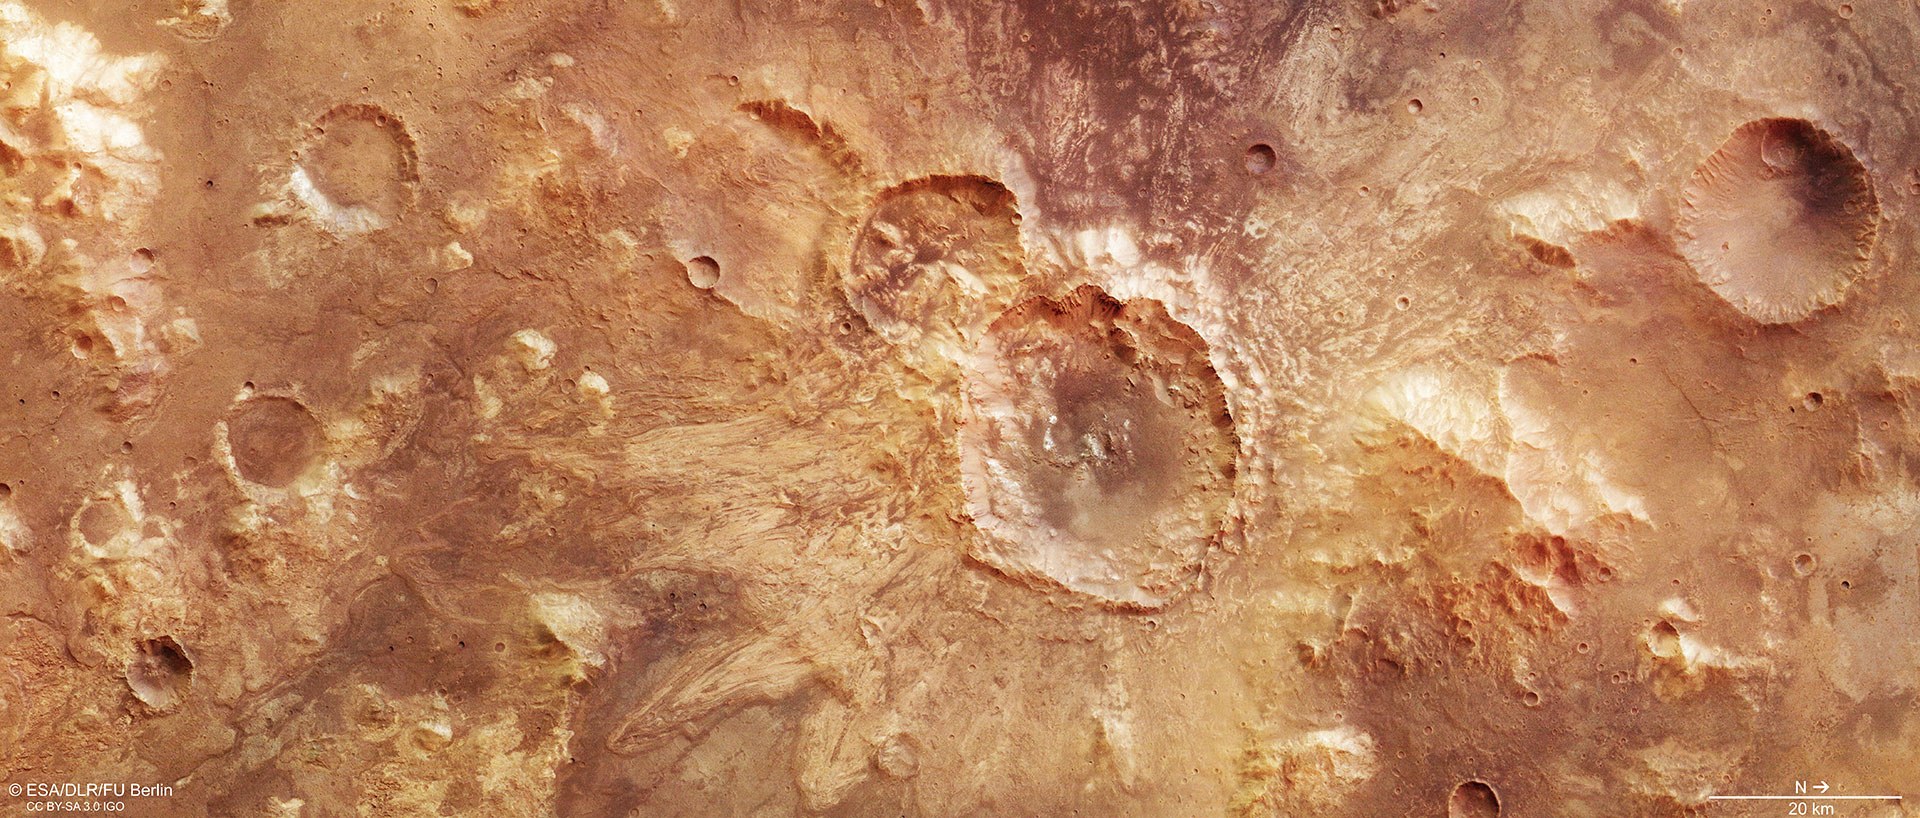 Farbansicht des auffälligen Kraters nördlich des Hellas-Beckens